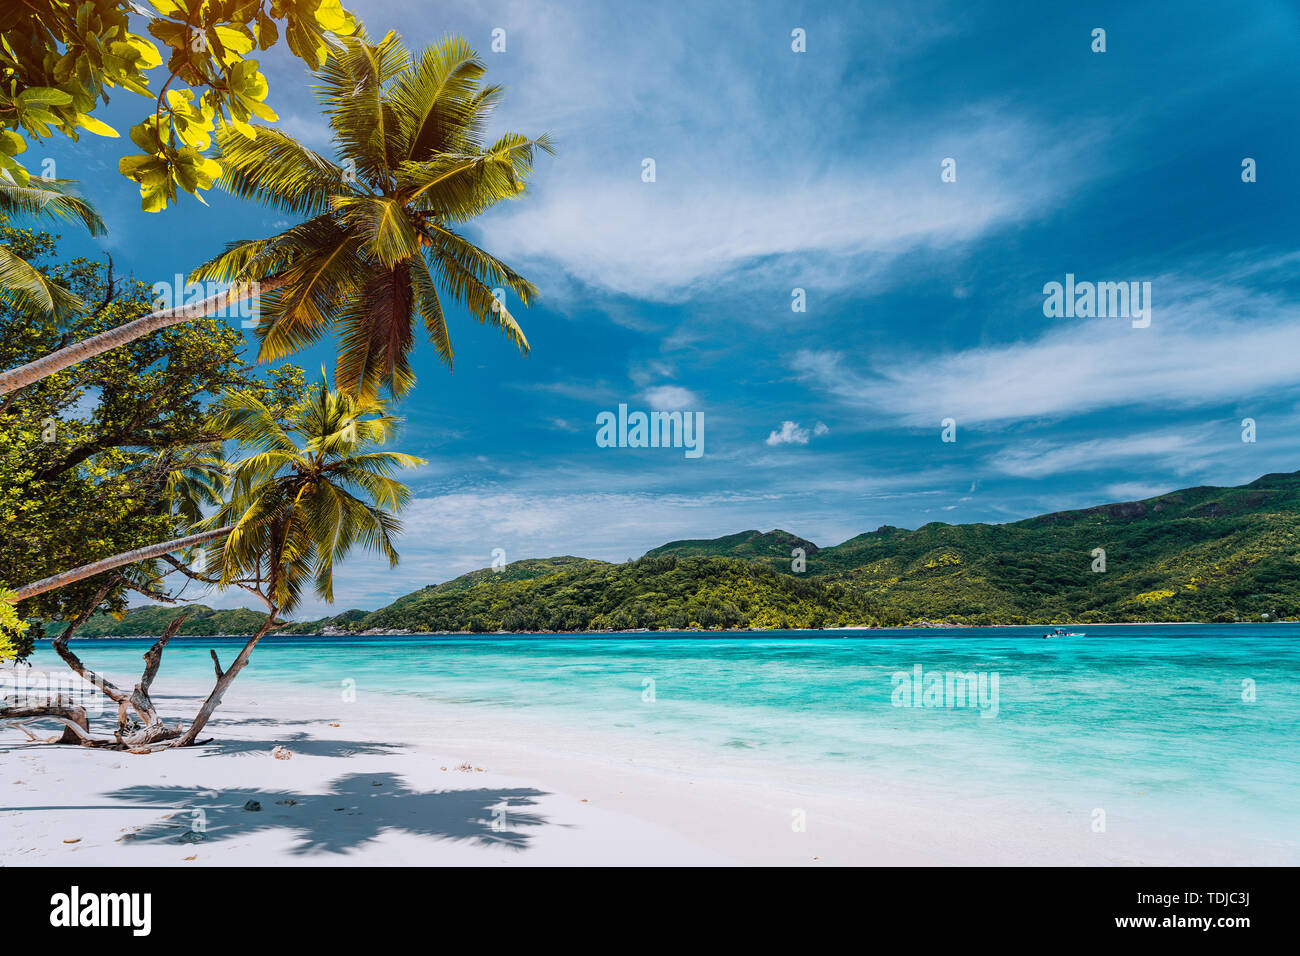 Vacaciones de lujo en la isla tropical. El paraíso de playa con arena blanca y palmeras. Viajes de larga distancia escapada turística concepto Foto de stock